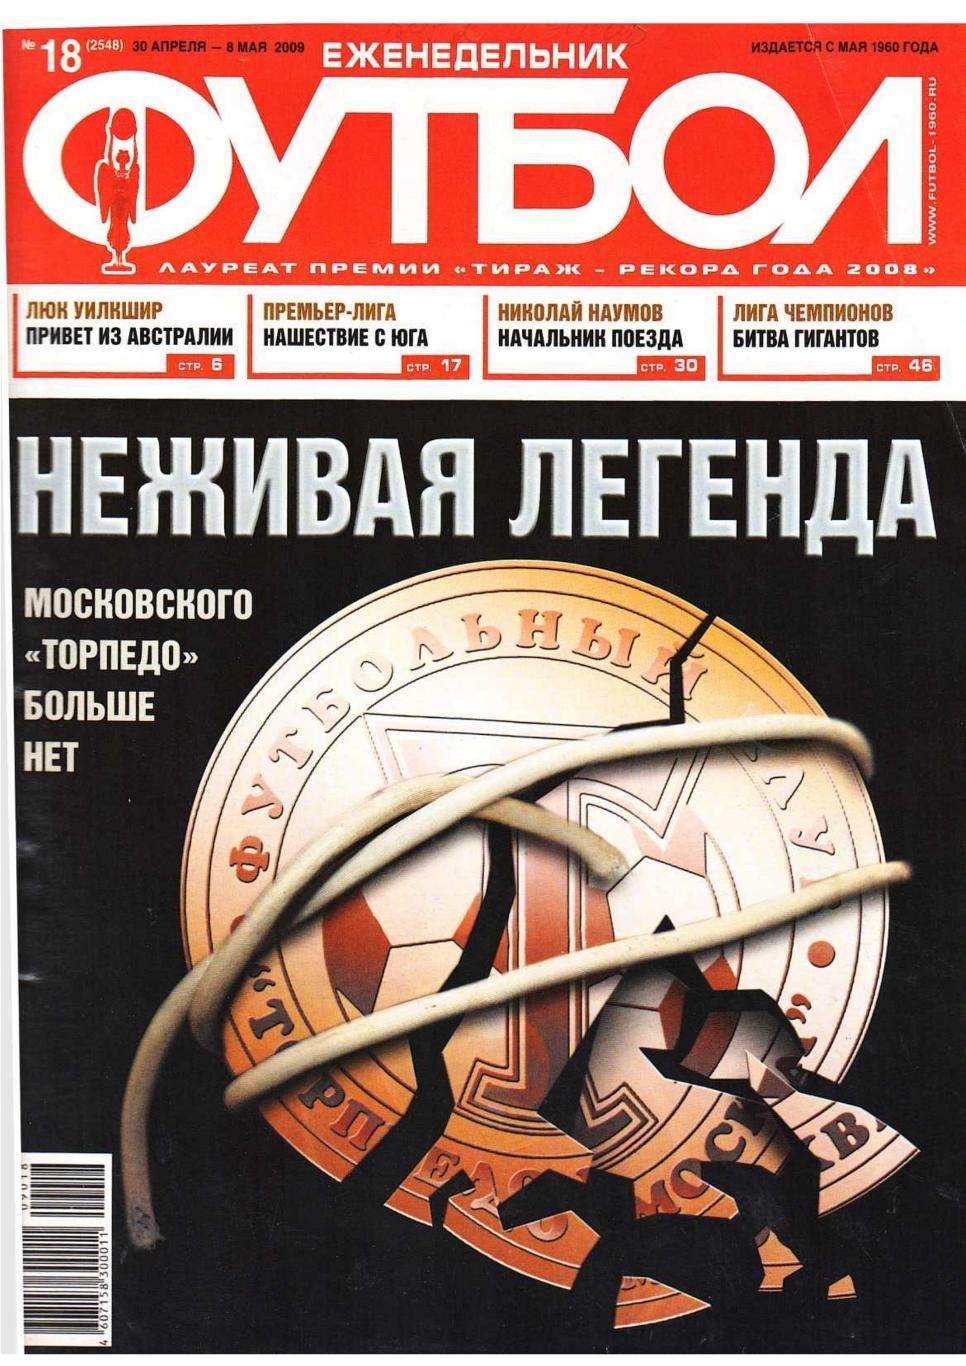 Еженедельник «Футбол». № 18. 30 апреля – 8 мая 2009.